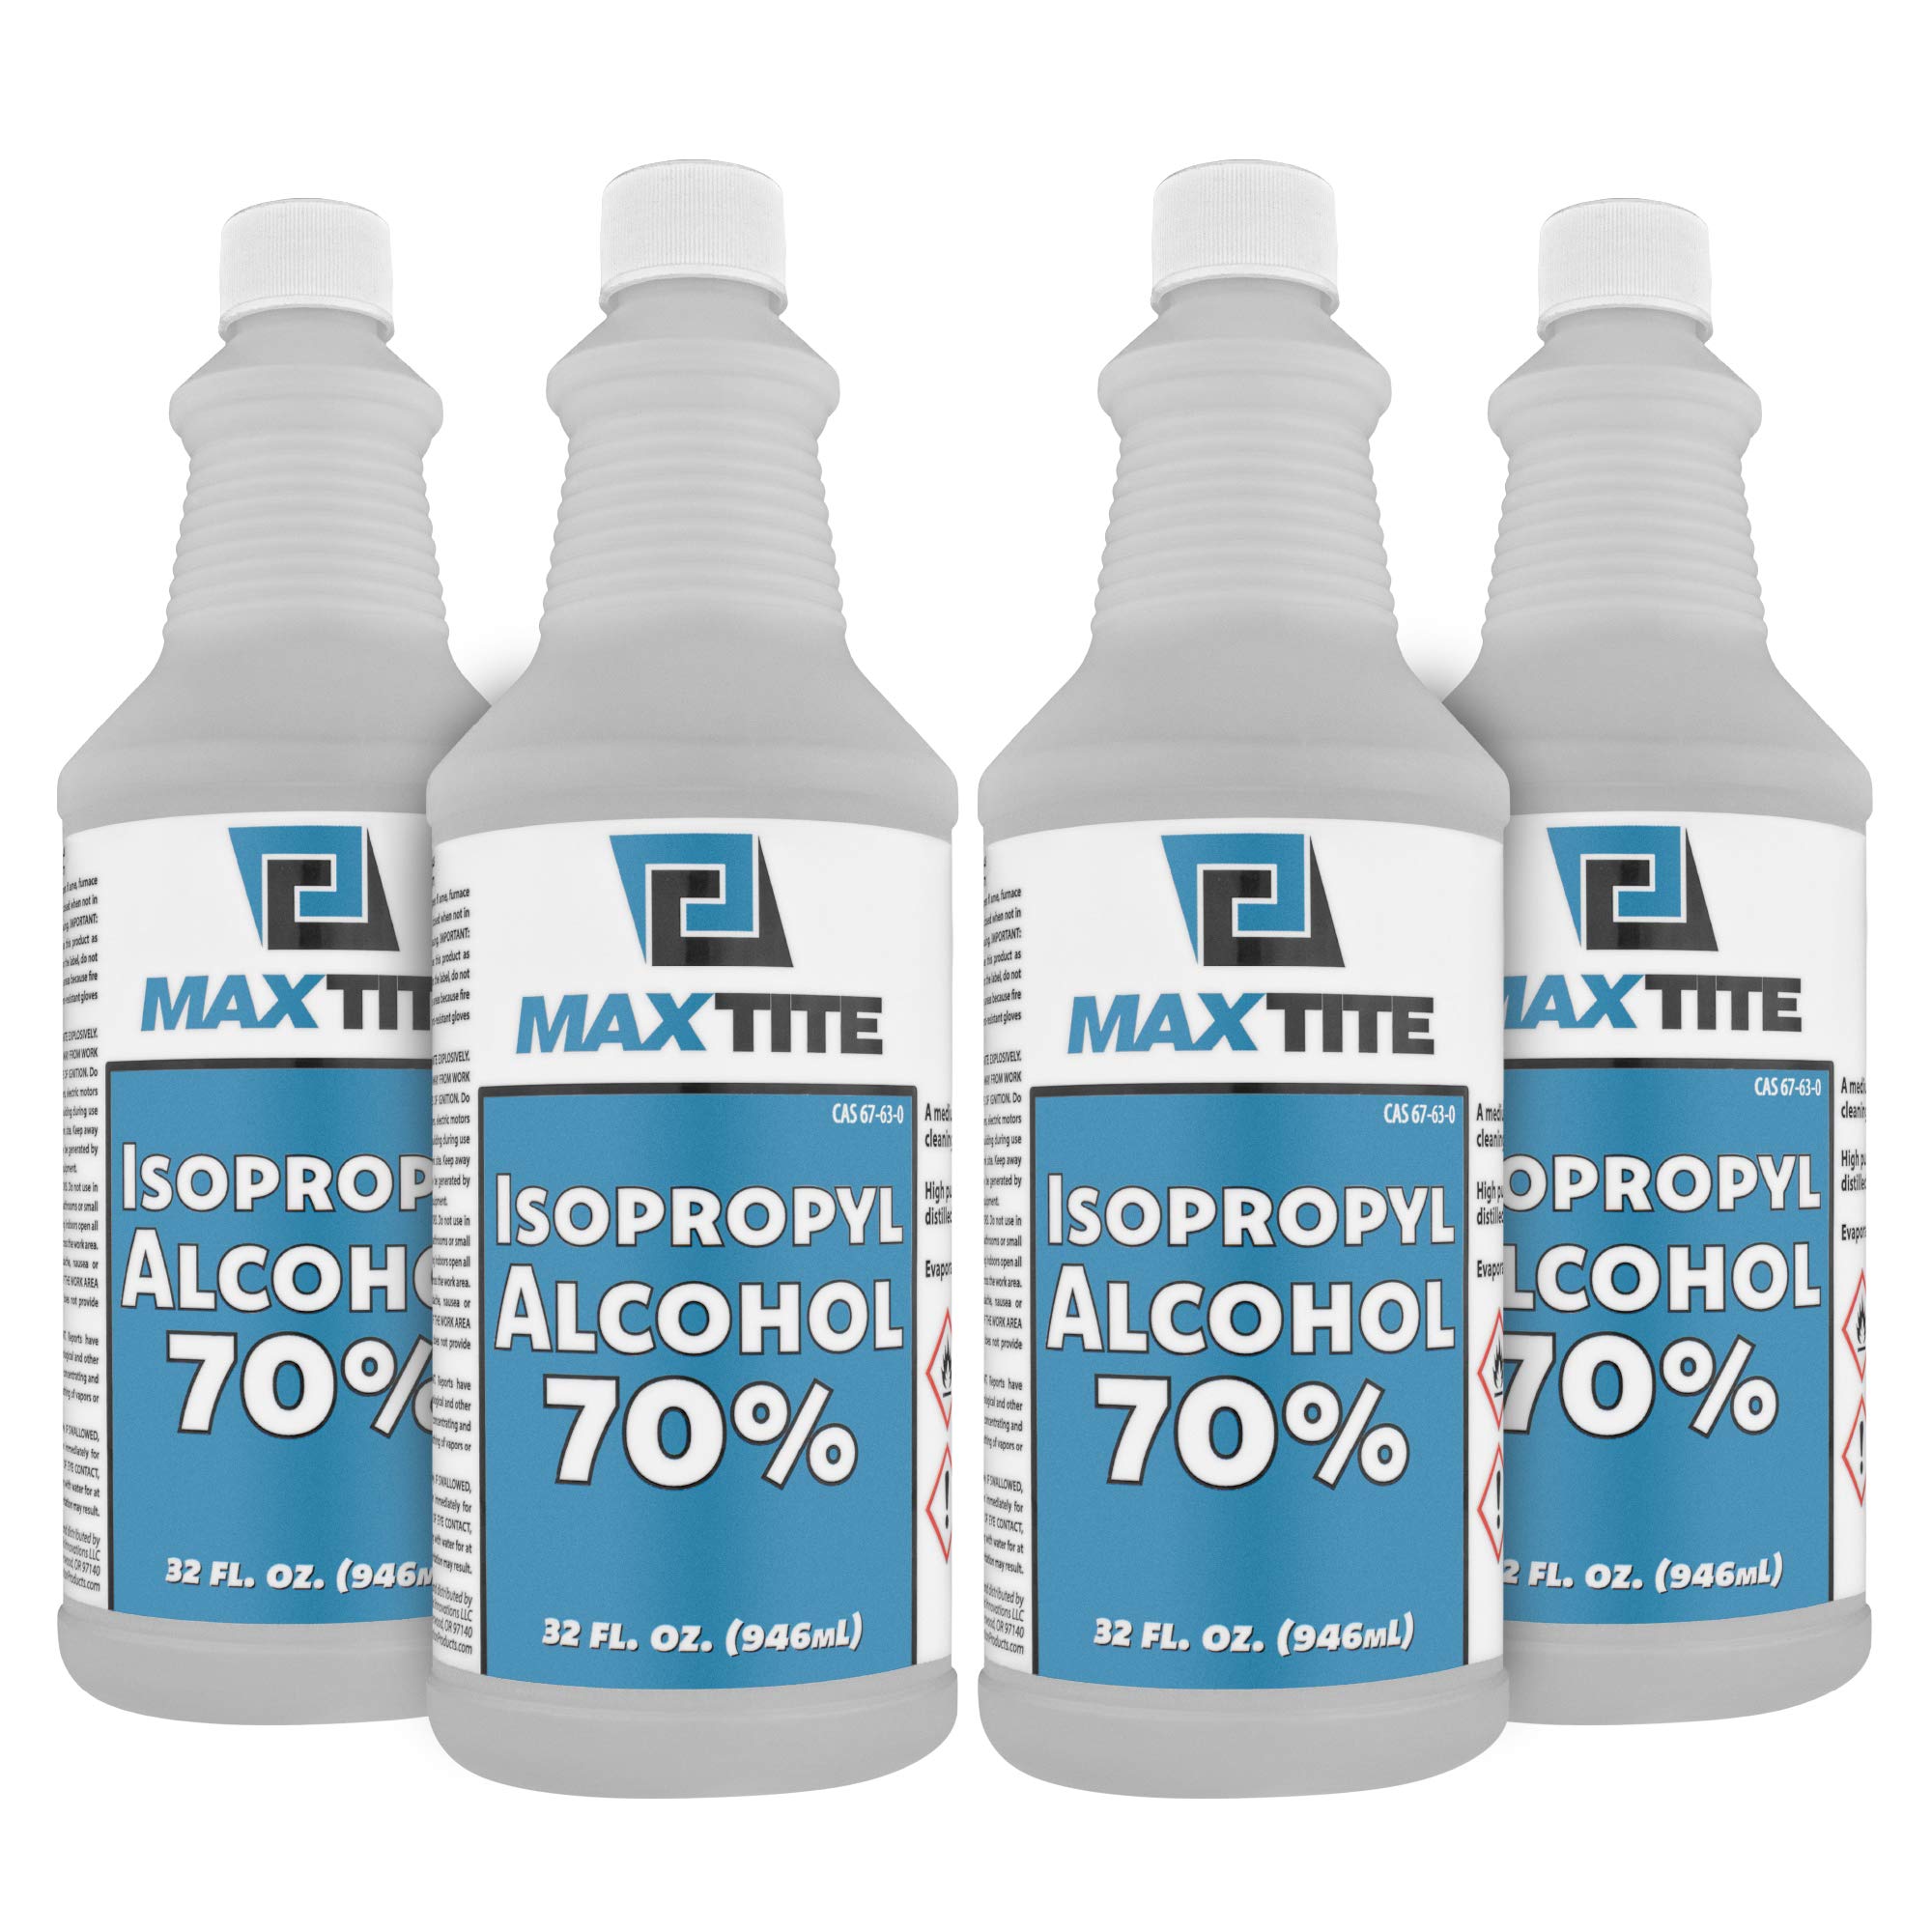 MaxTite Alcohol isopropílico 70%